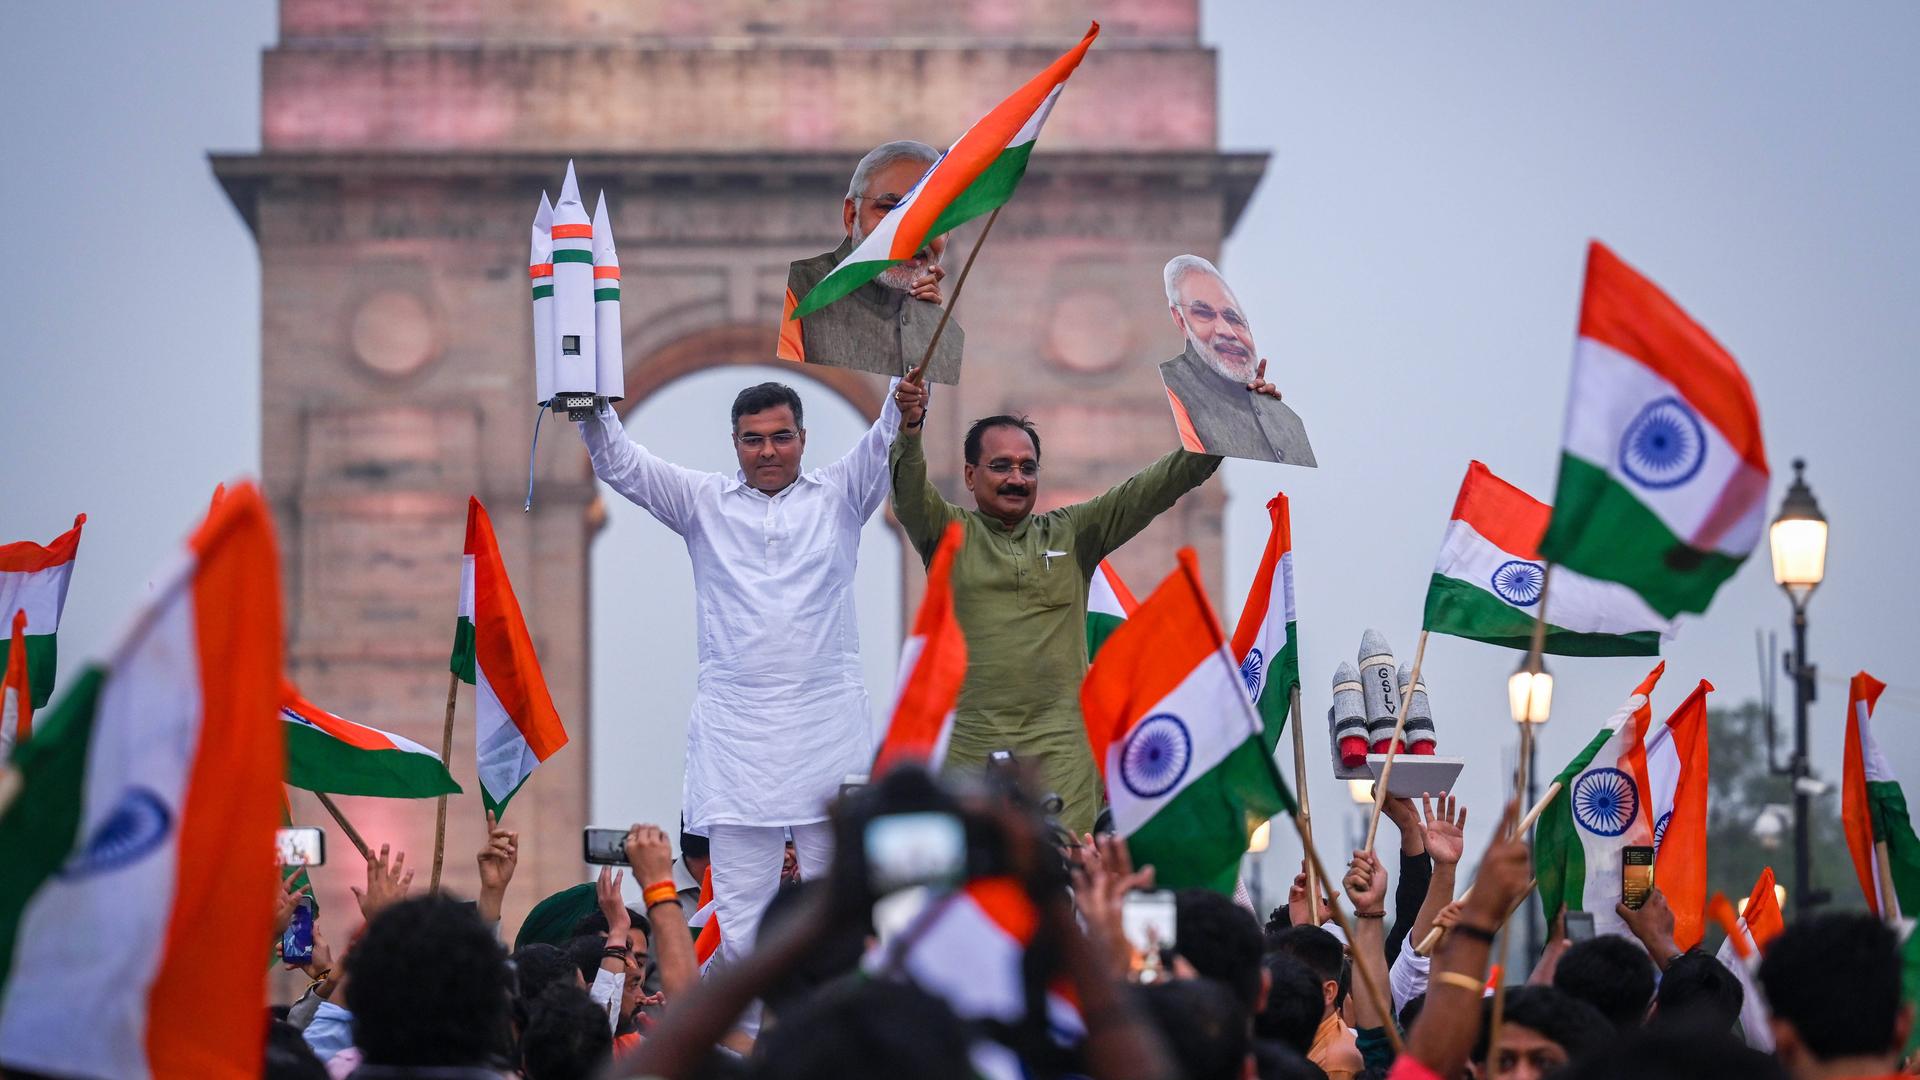 Der BJP-Abgeordnete Parvesh Sahib Singh Verma und der Präsident der BJP von Delhi, Virendra Sachdeva, feiern mit anderen Menschen auf einer Straße in Neu-Delhi die erfolgreiche Landung des Chandrayan3 Vikaram Lander auf dem Mond